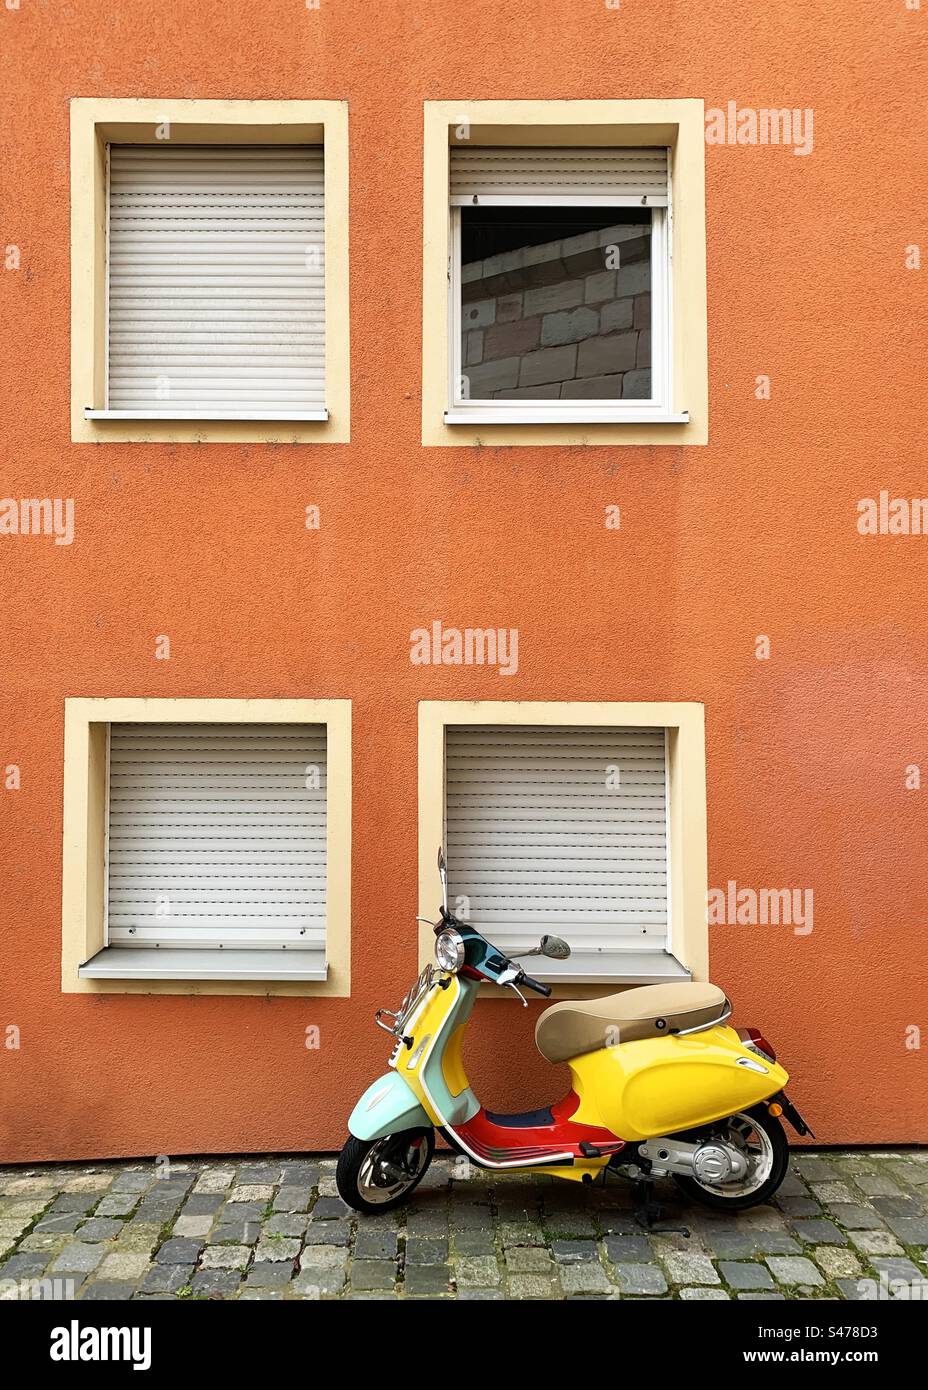 Yellow motorcycle Stock Photo